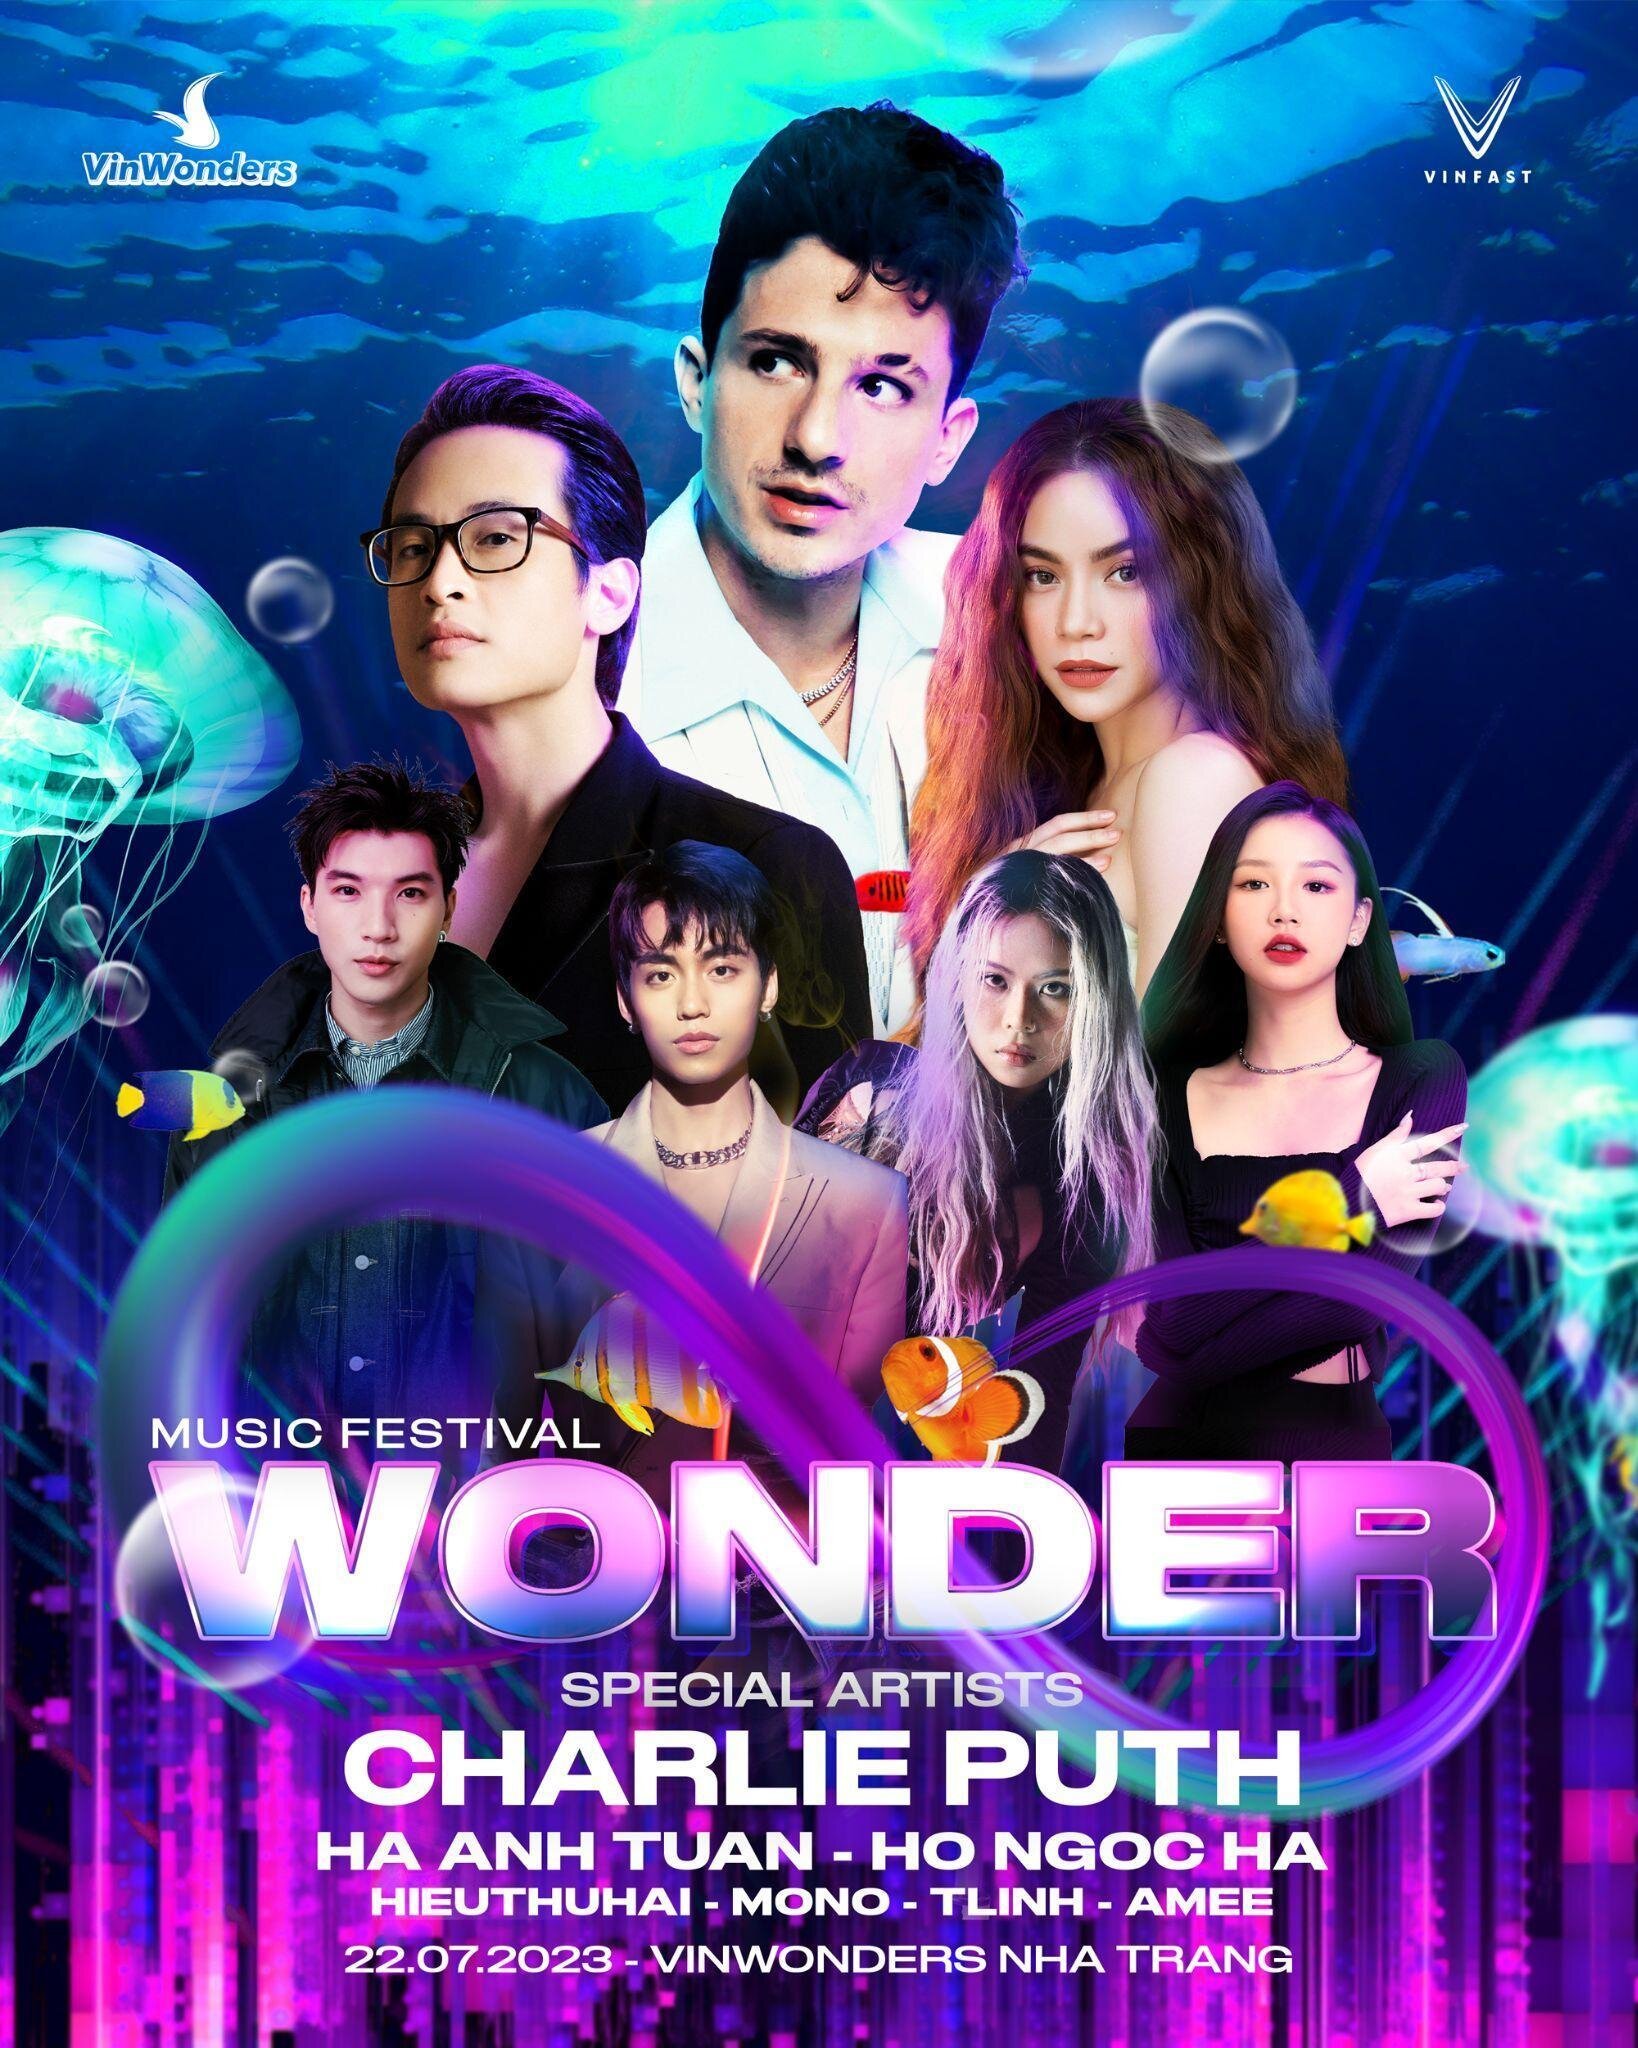 Công bố dàn sao Việt biểu diễn cùng Charlie Puth tại đại nhạc hội 8Wonder - 1